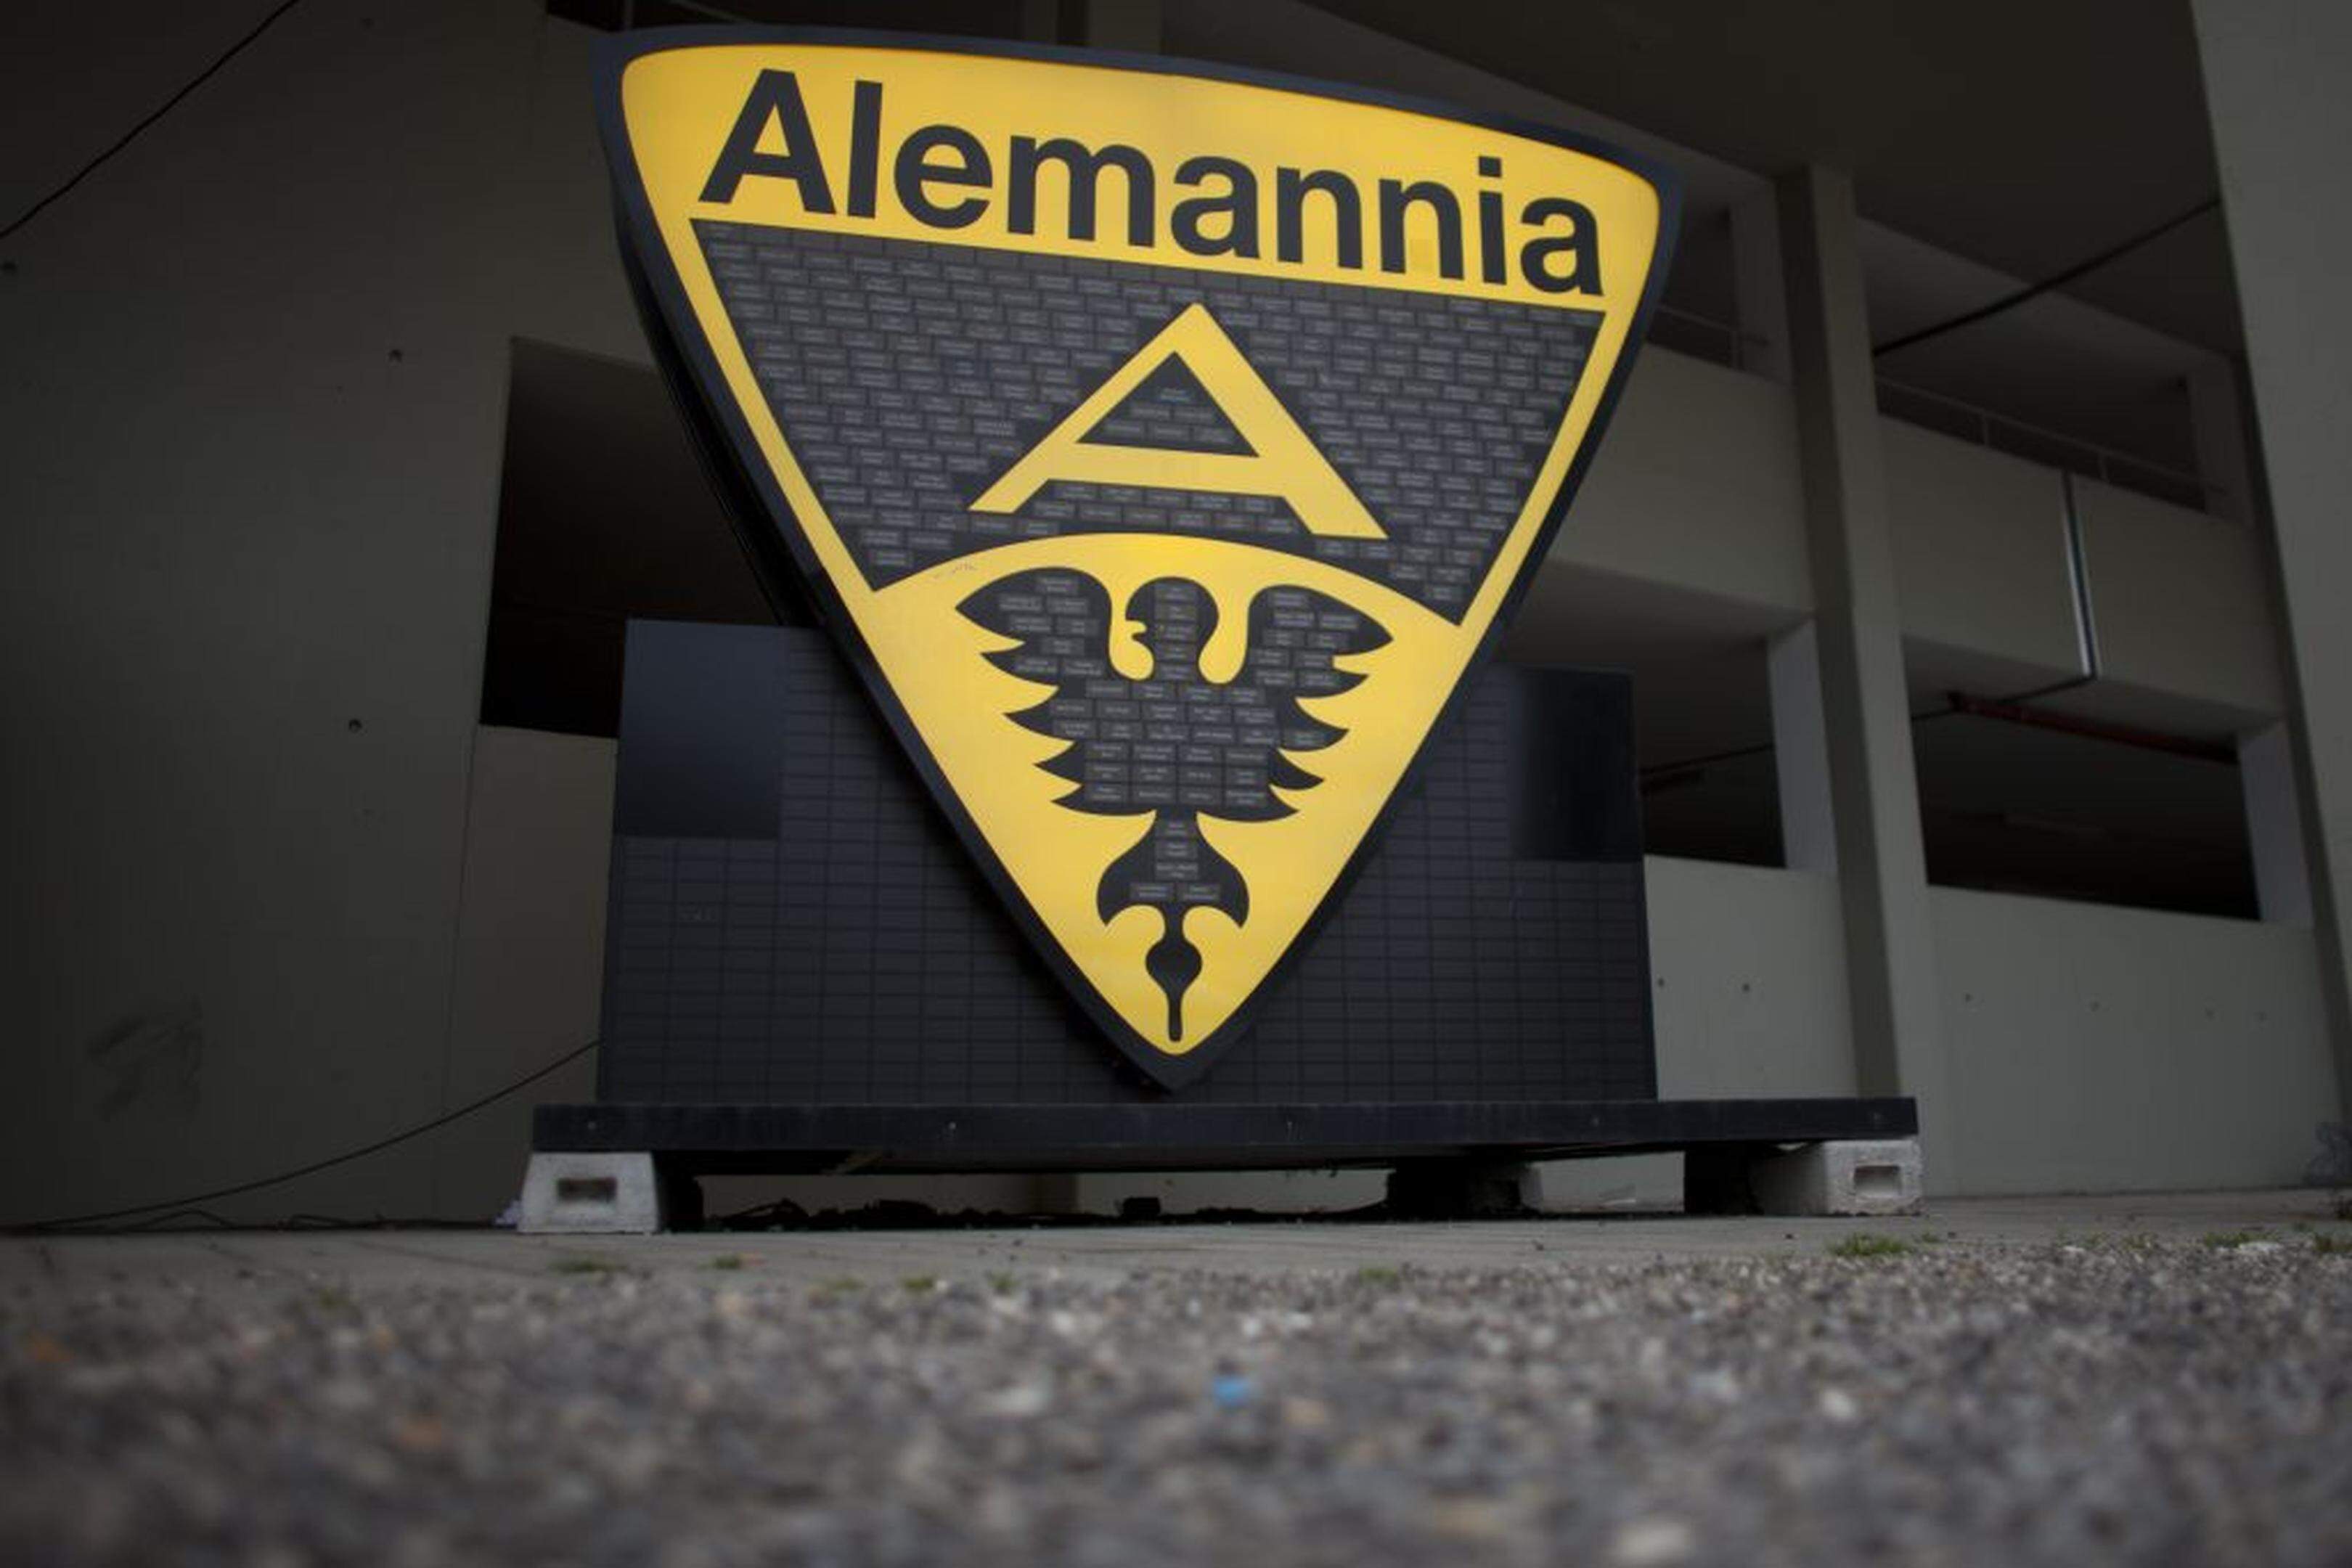 ARCHIV - Ein Logo von Alemannia Aachen steht am 29.10.2012 am Tivoli Stadion in Aachen (Nordrhein-Westfalen). (zu dpa «Insolvenzverwalter: Alemannia Aachen kann Saison beenden» am 23.03.2017) Foto: Rolf Vennenbernd/dpa +++(c) dpa - Bildfunk+++